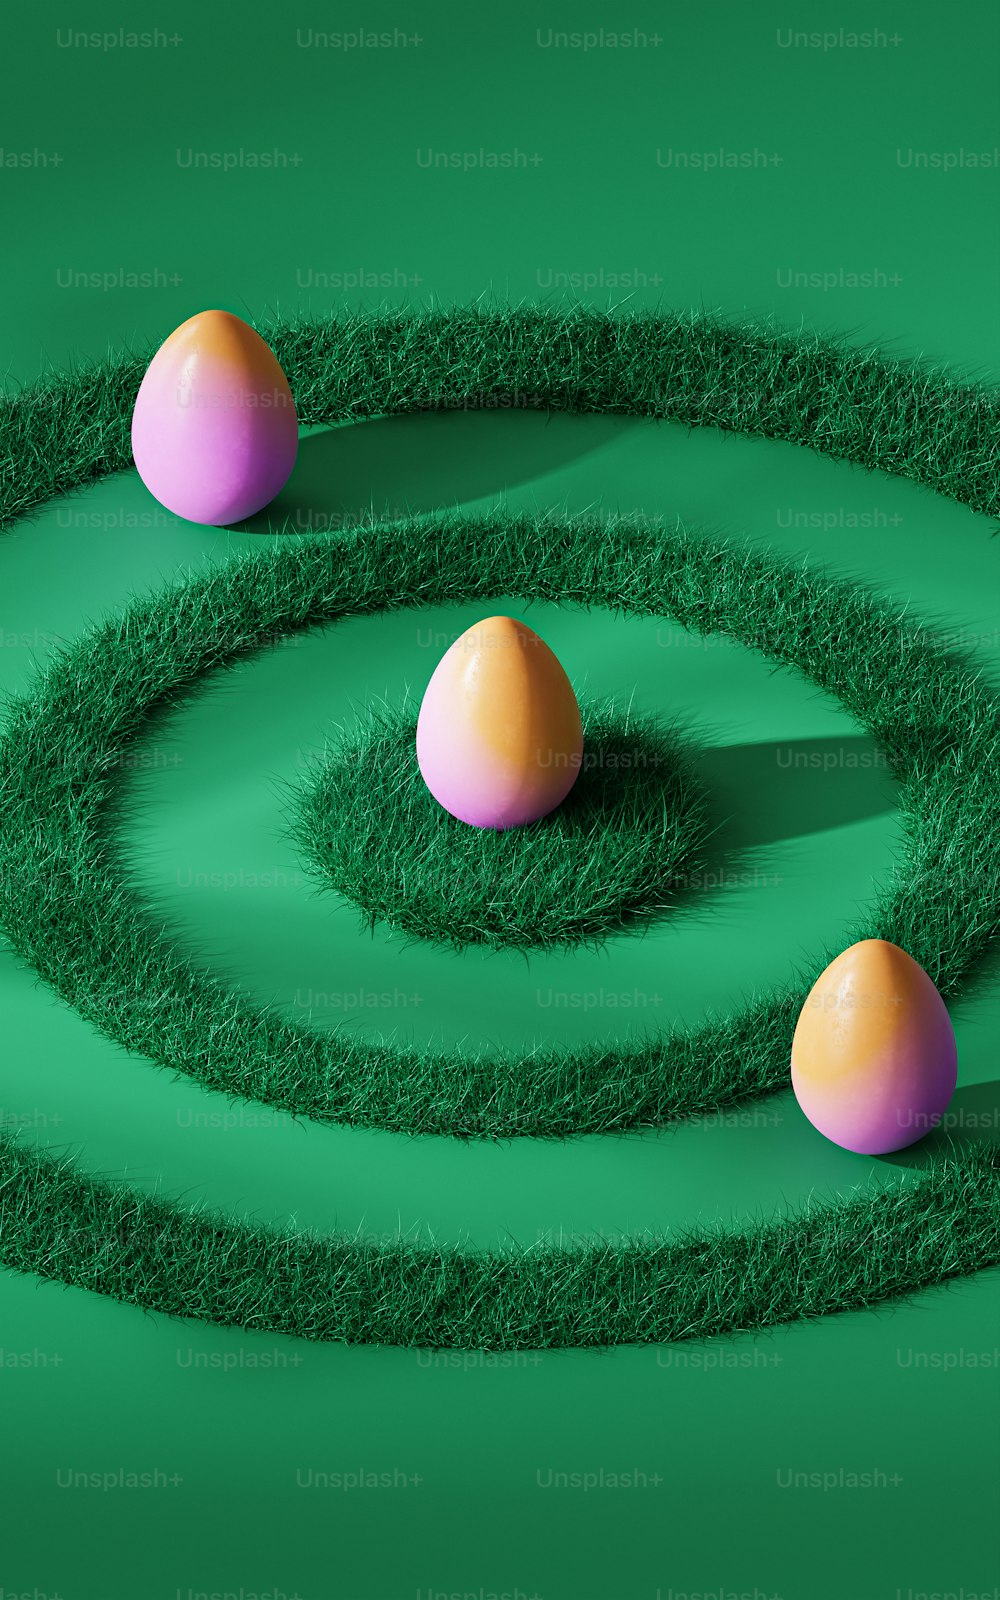 três ovos estão em uma espiral em uma superfície verde